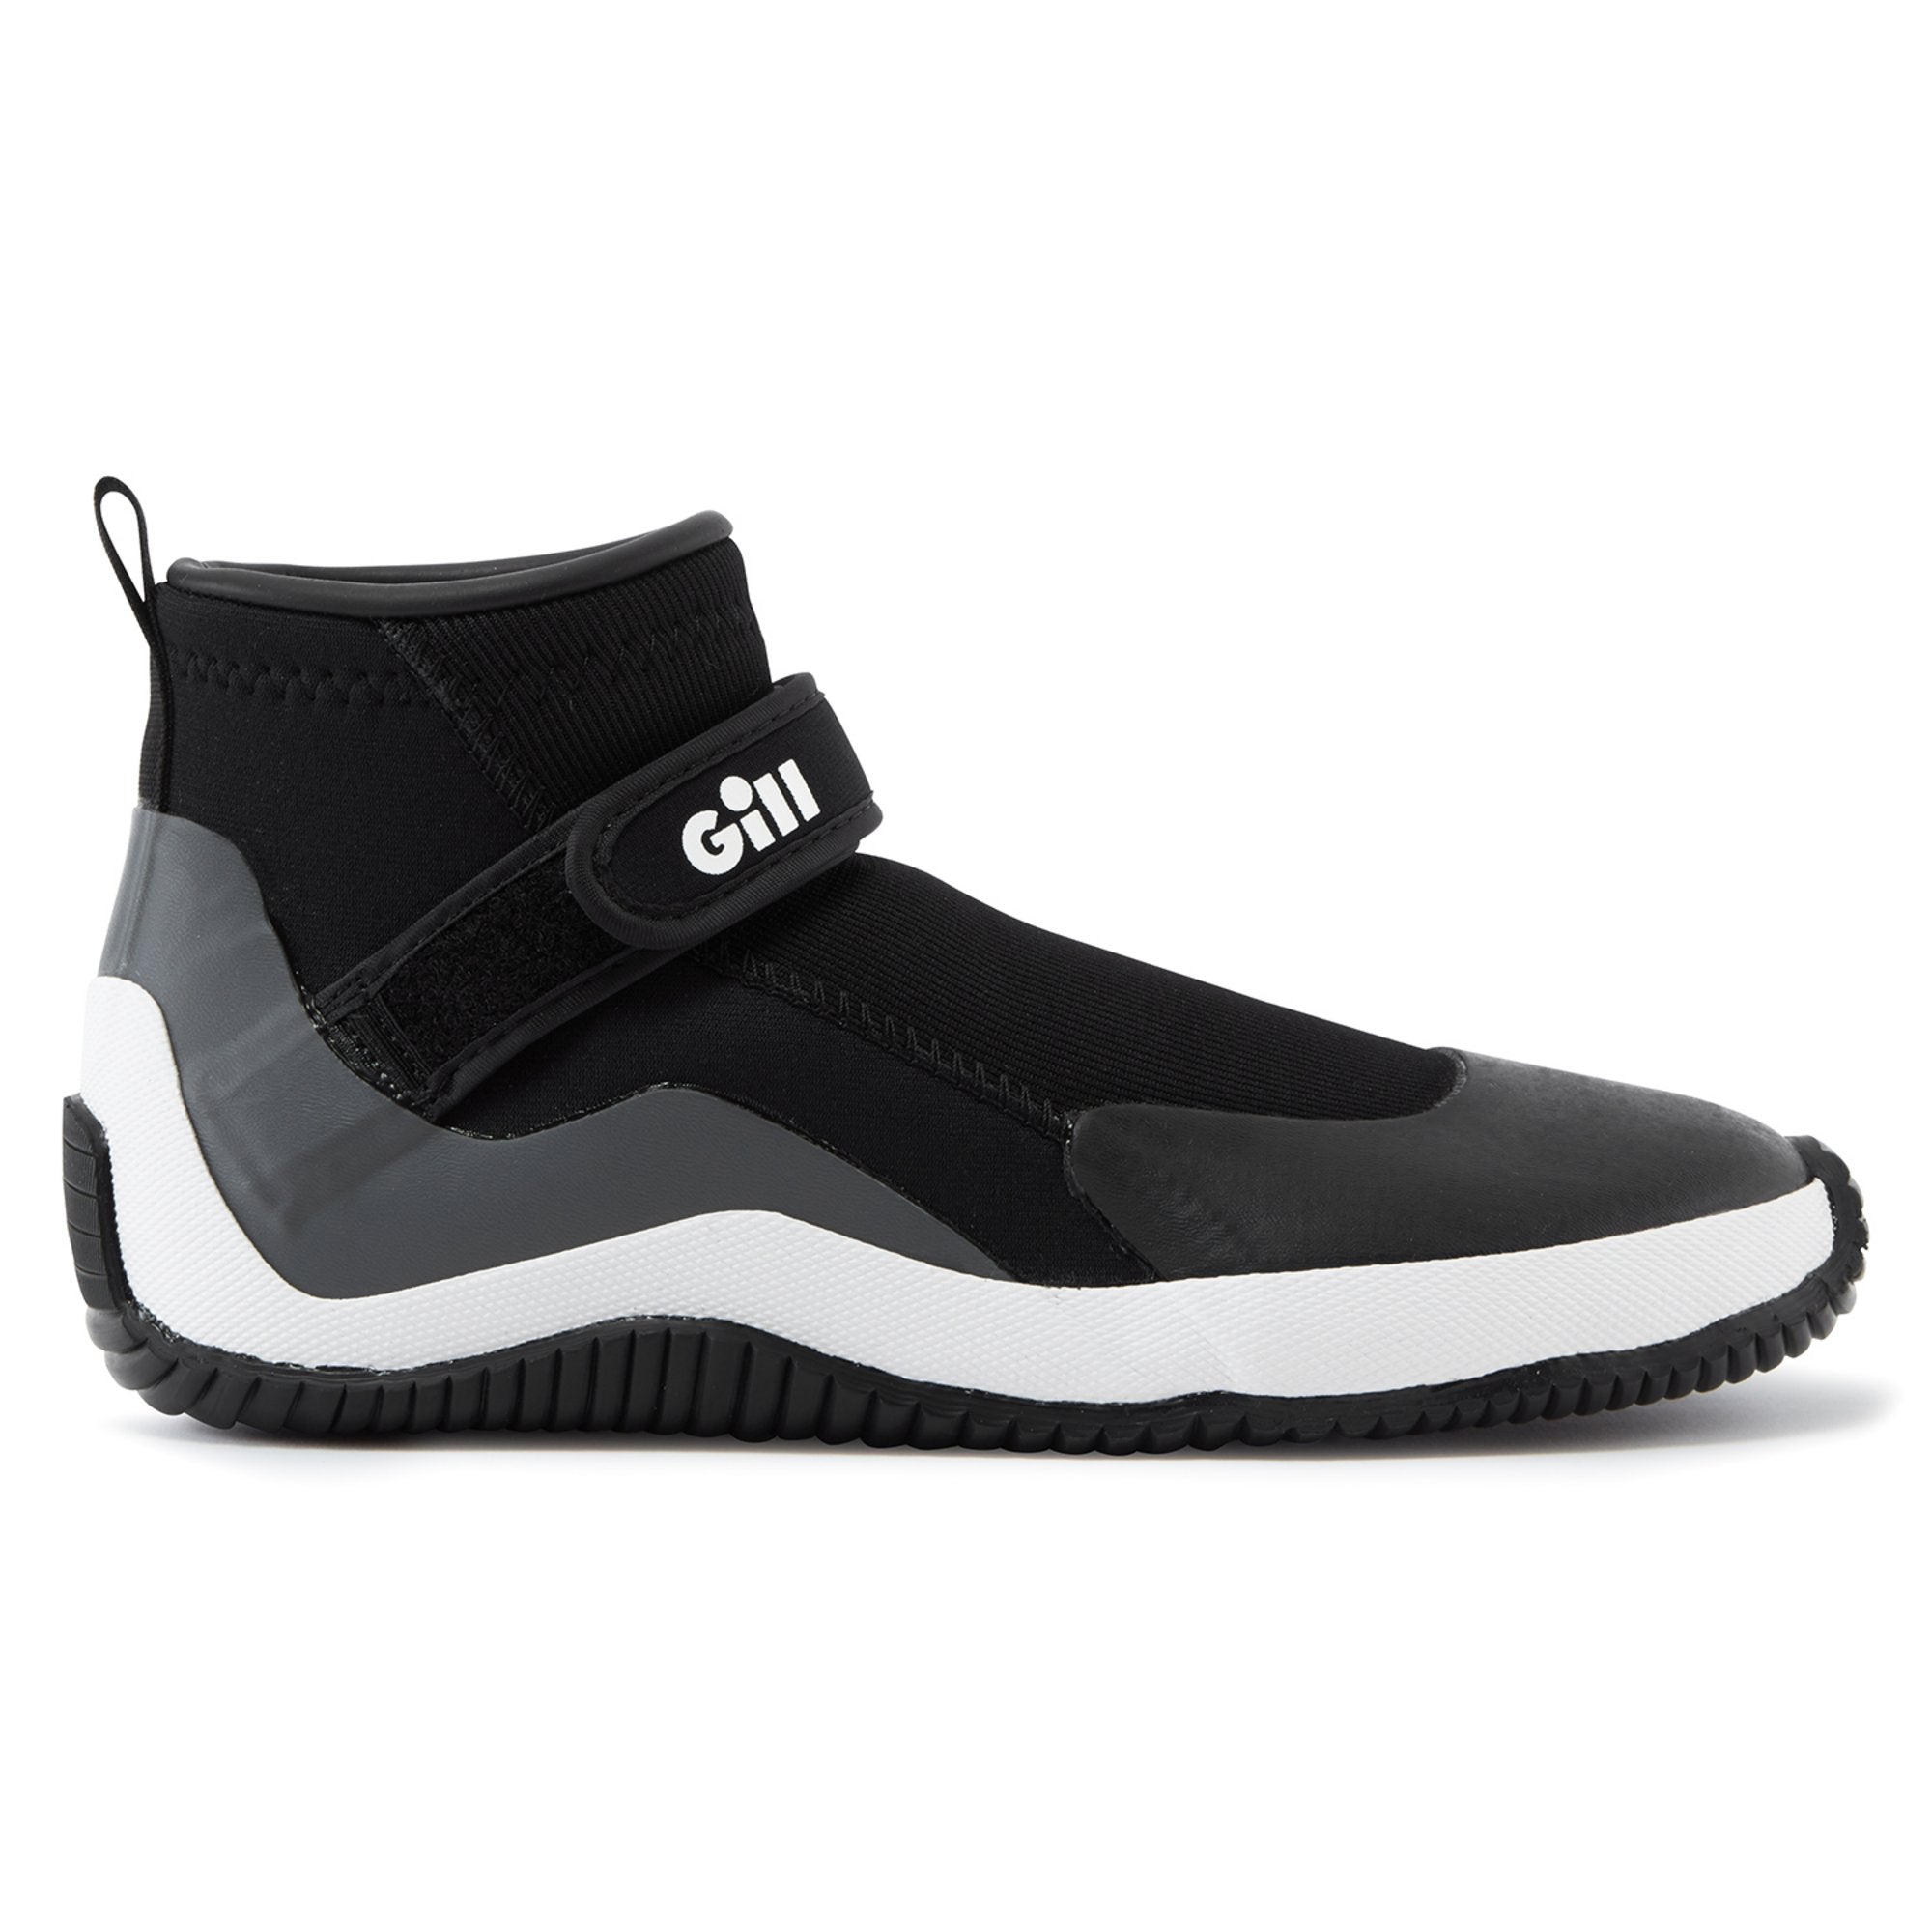 GILL Junior Aquatech Shoe